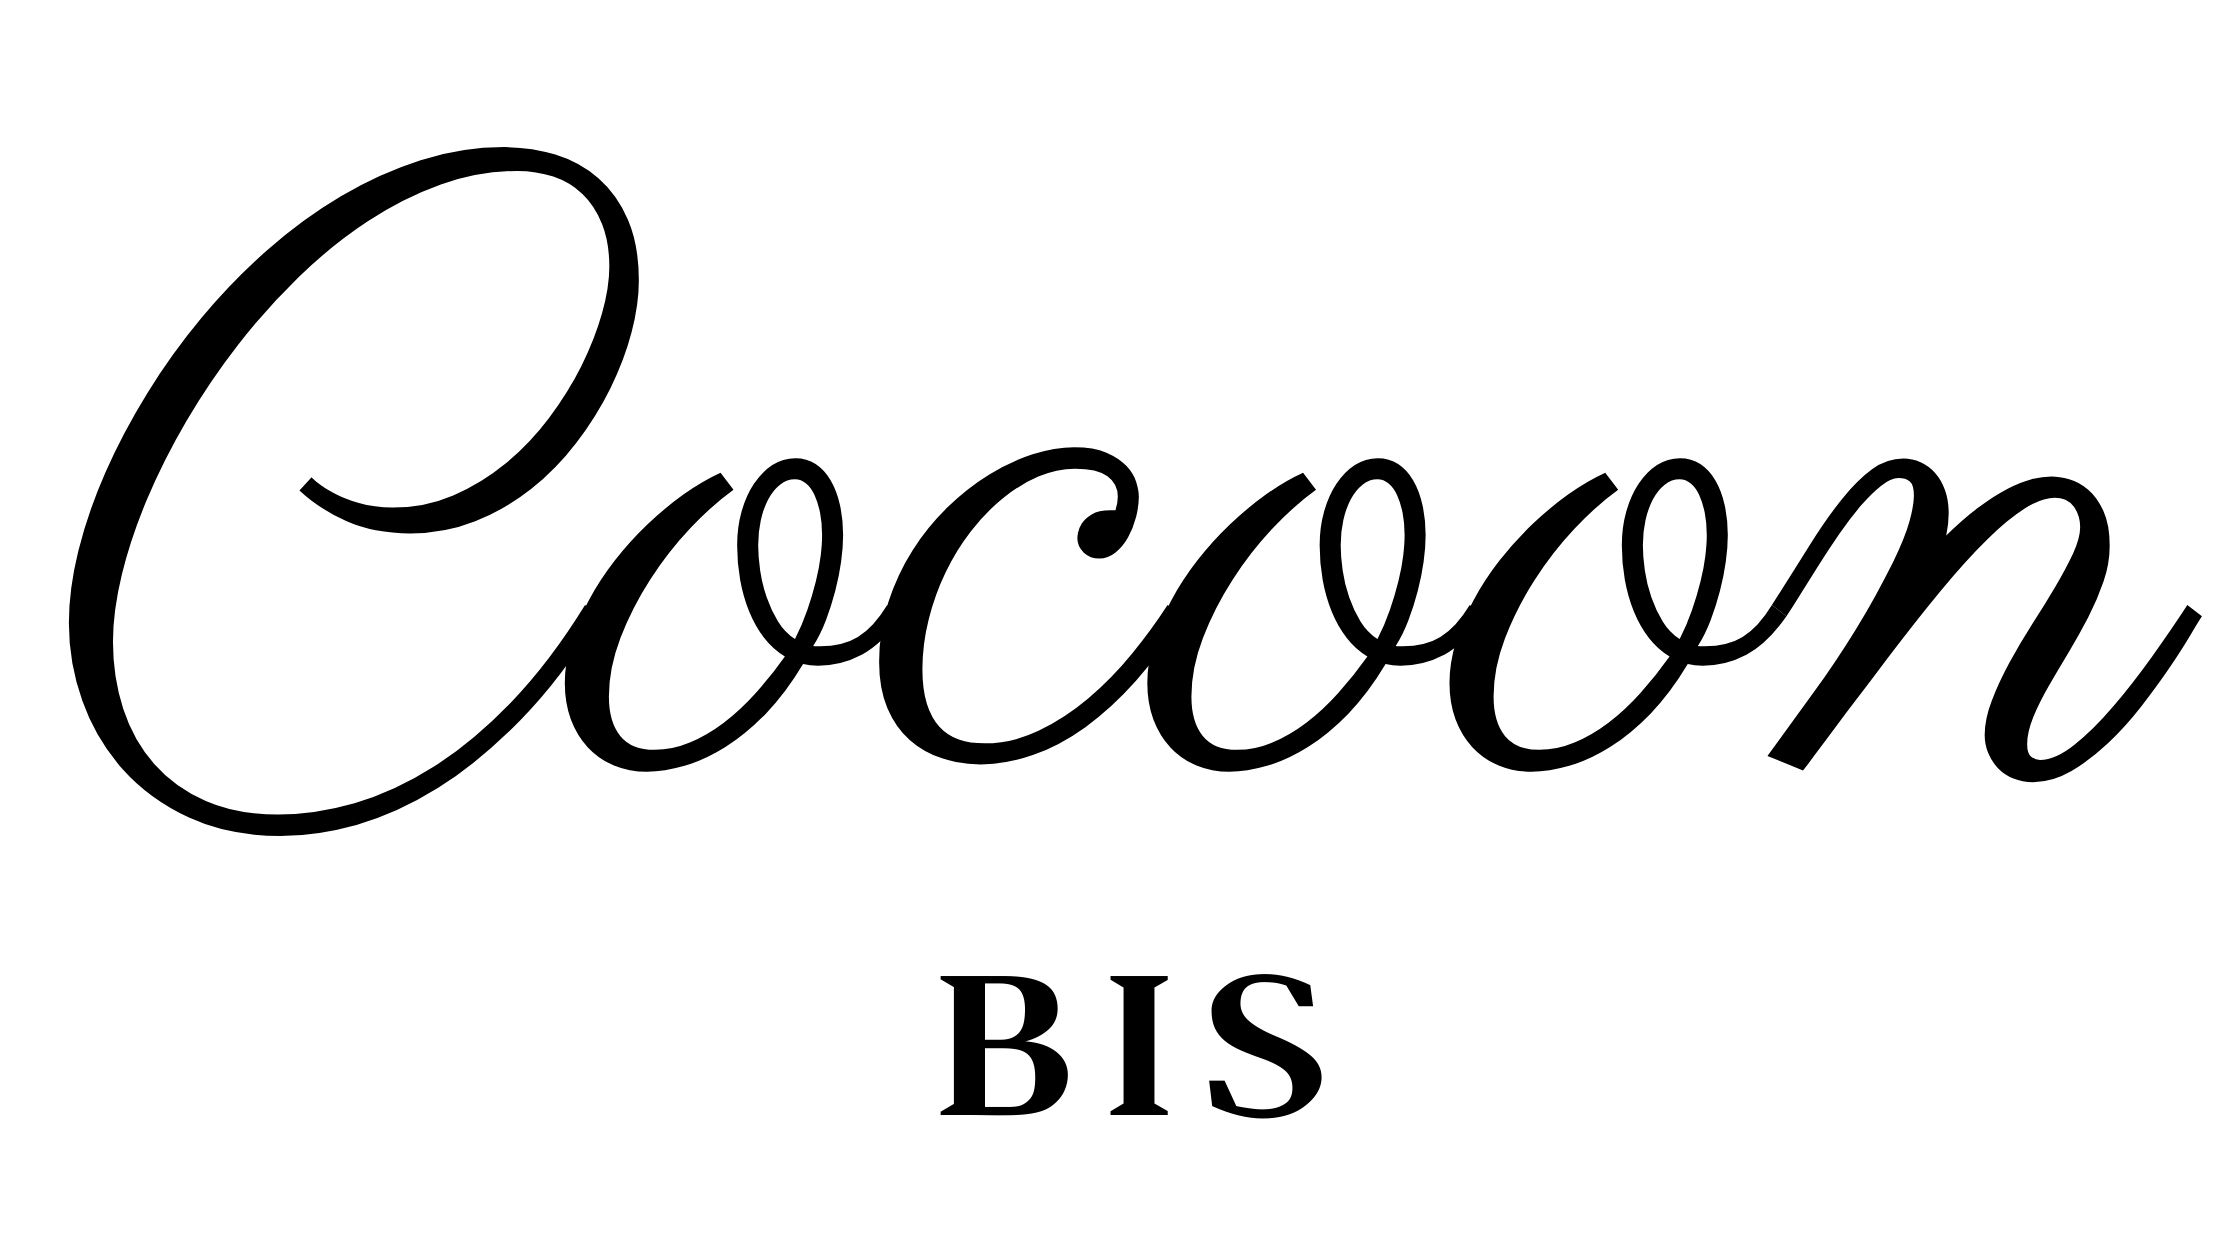 Cocoon Bis